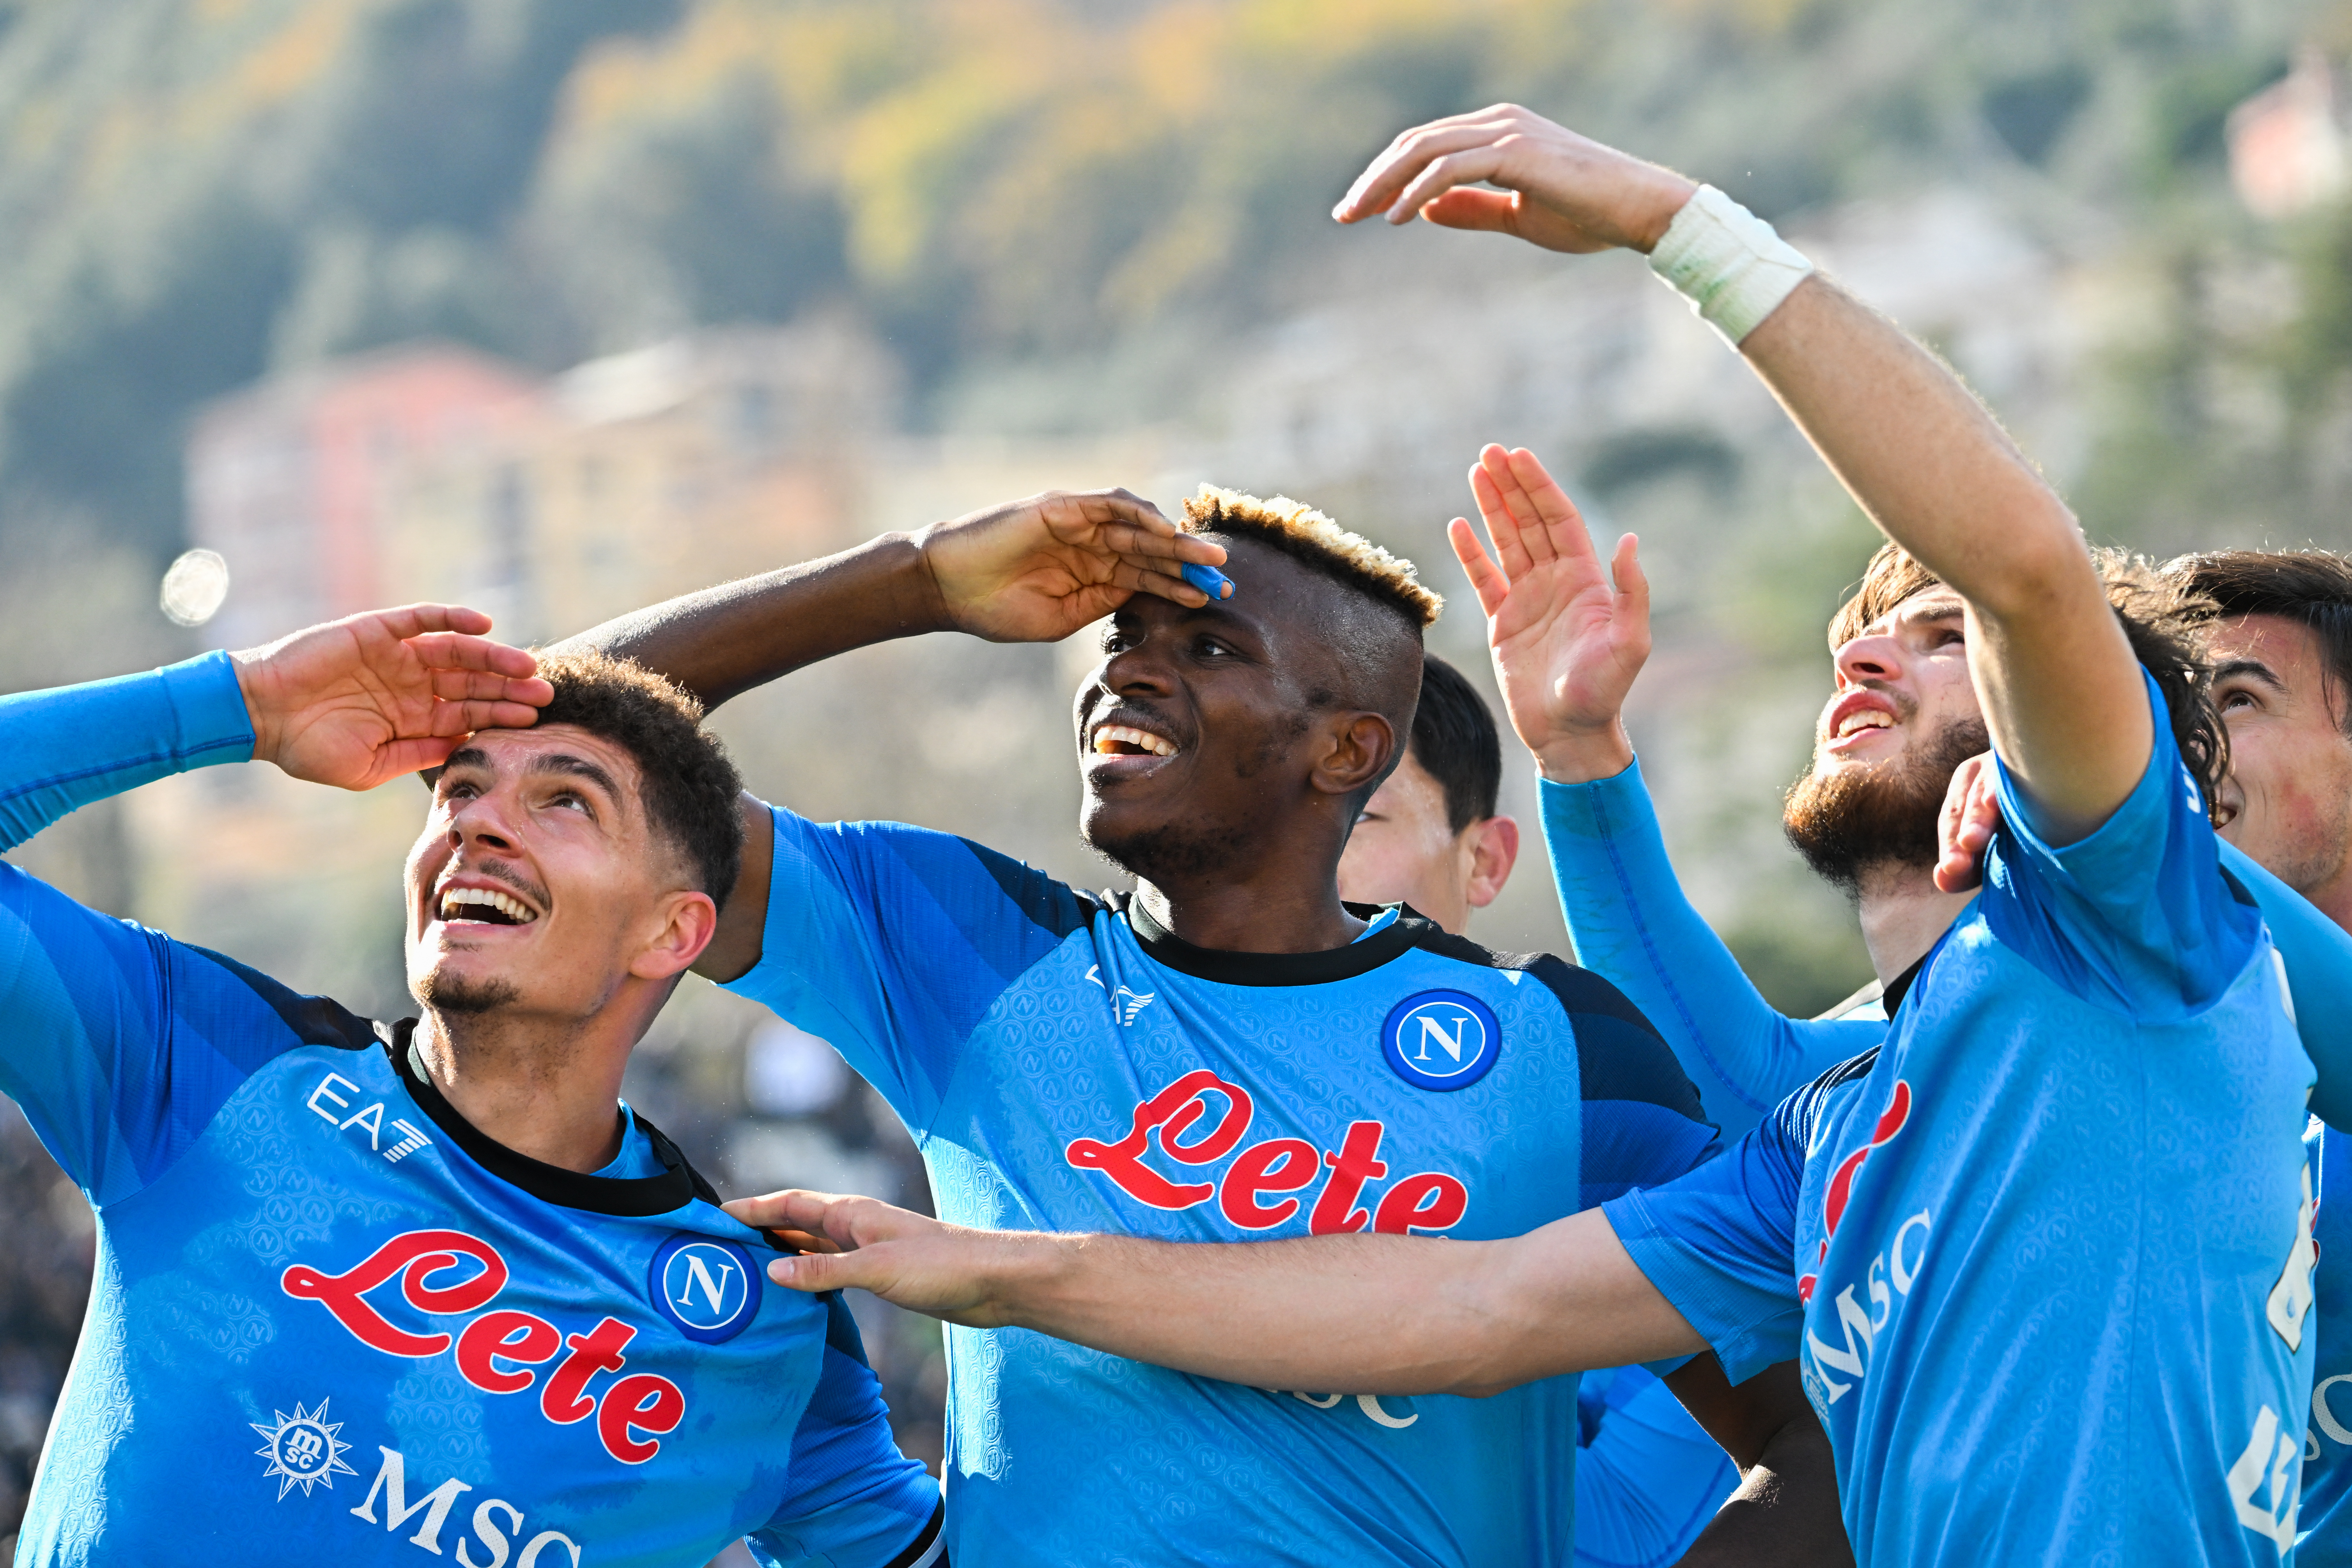 Com foco total no Italiano, Napoli pode ser campeã na próxima rodada